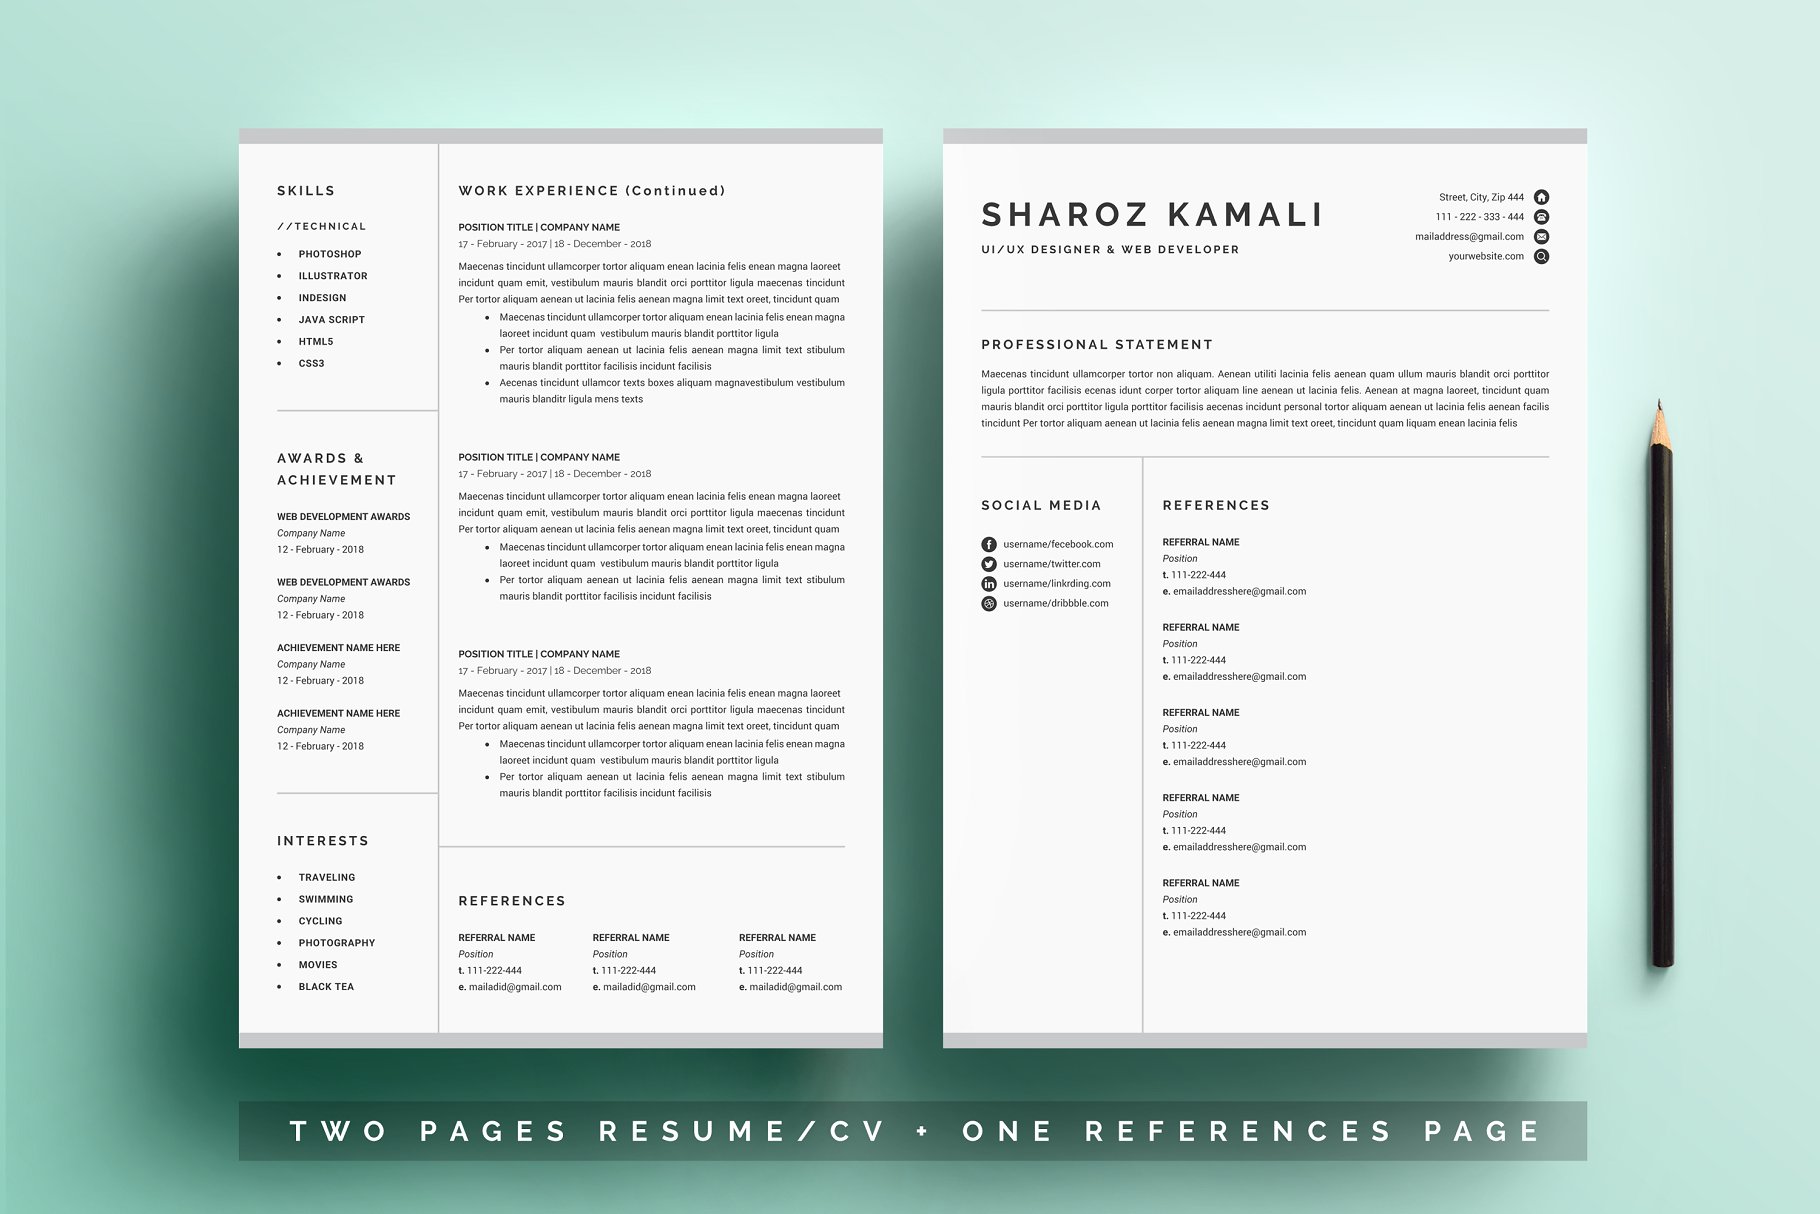 一份4页清爽明了的简历模板 Resume/CV Template 4 Pages Pack插图(2)